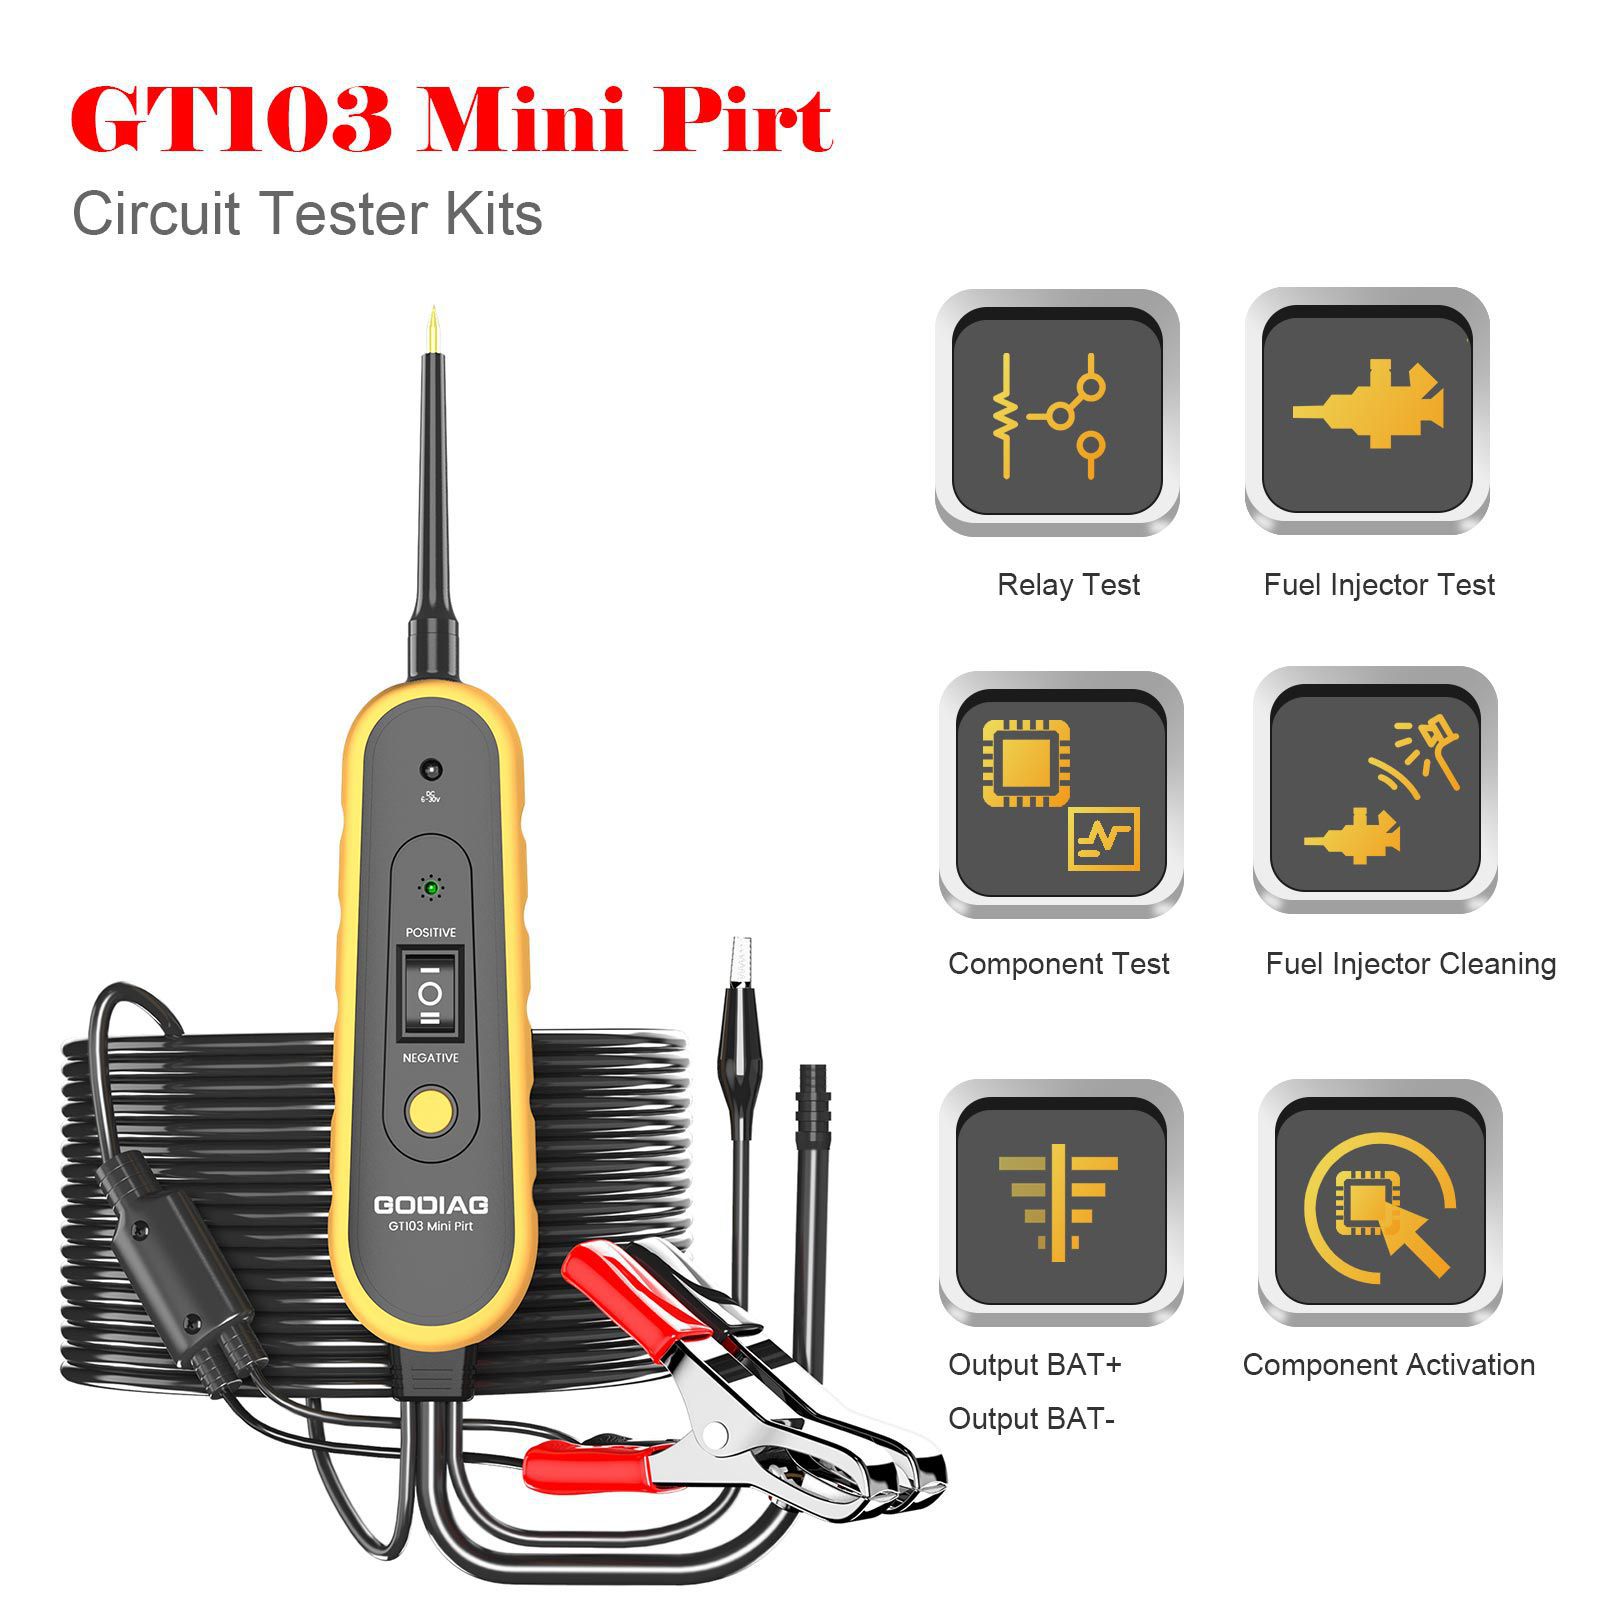 Godiag gt103 Mini PIRT Circuit Tester diagnostic du système électrique du véhicule / nettoyage et test des injecteurs / test des relais